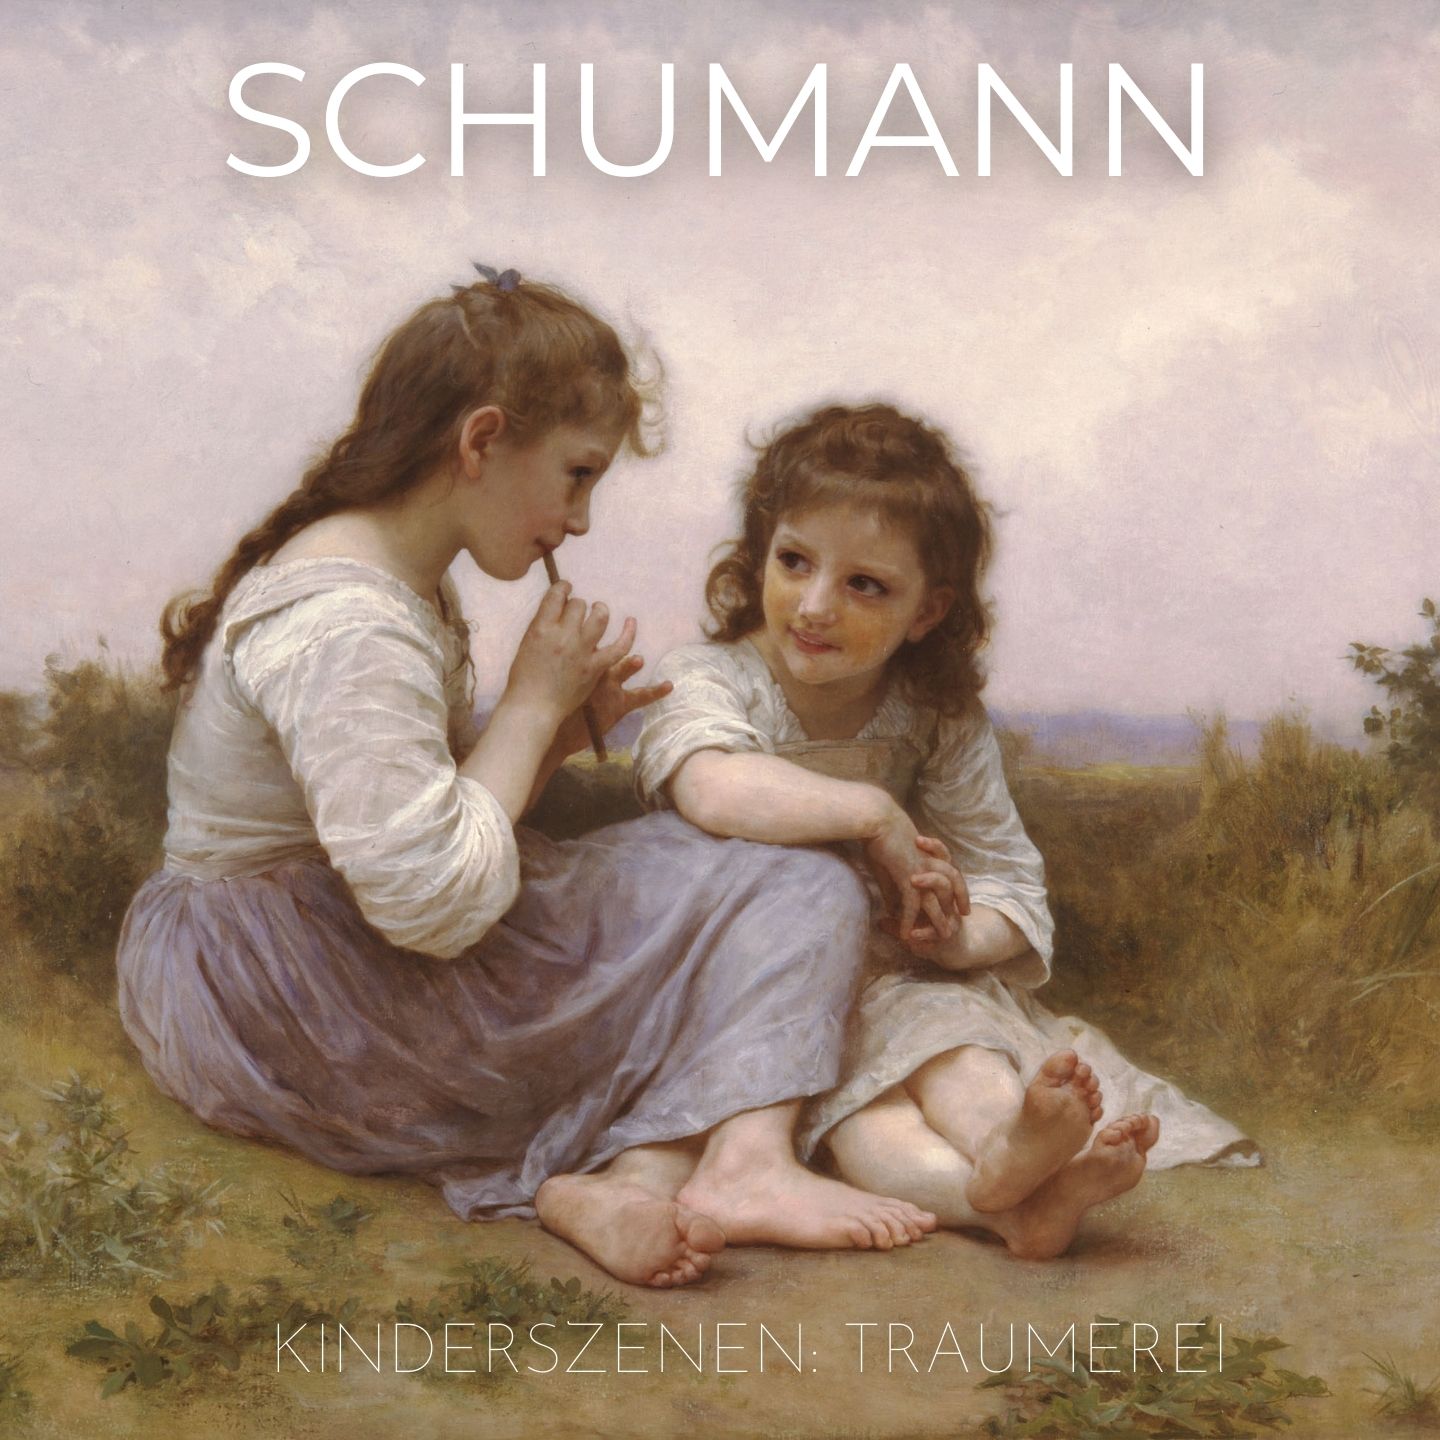 Schumann: Kinderszenen (Scenes from Childhood), Op. 15: No. 7, Traumerei